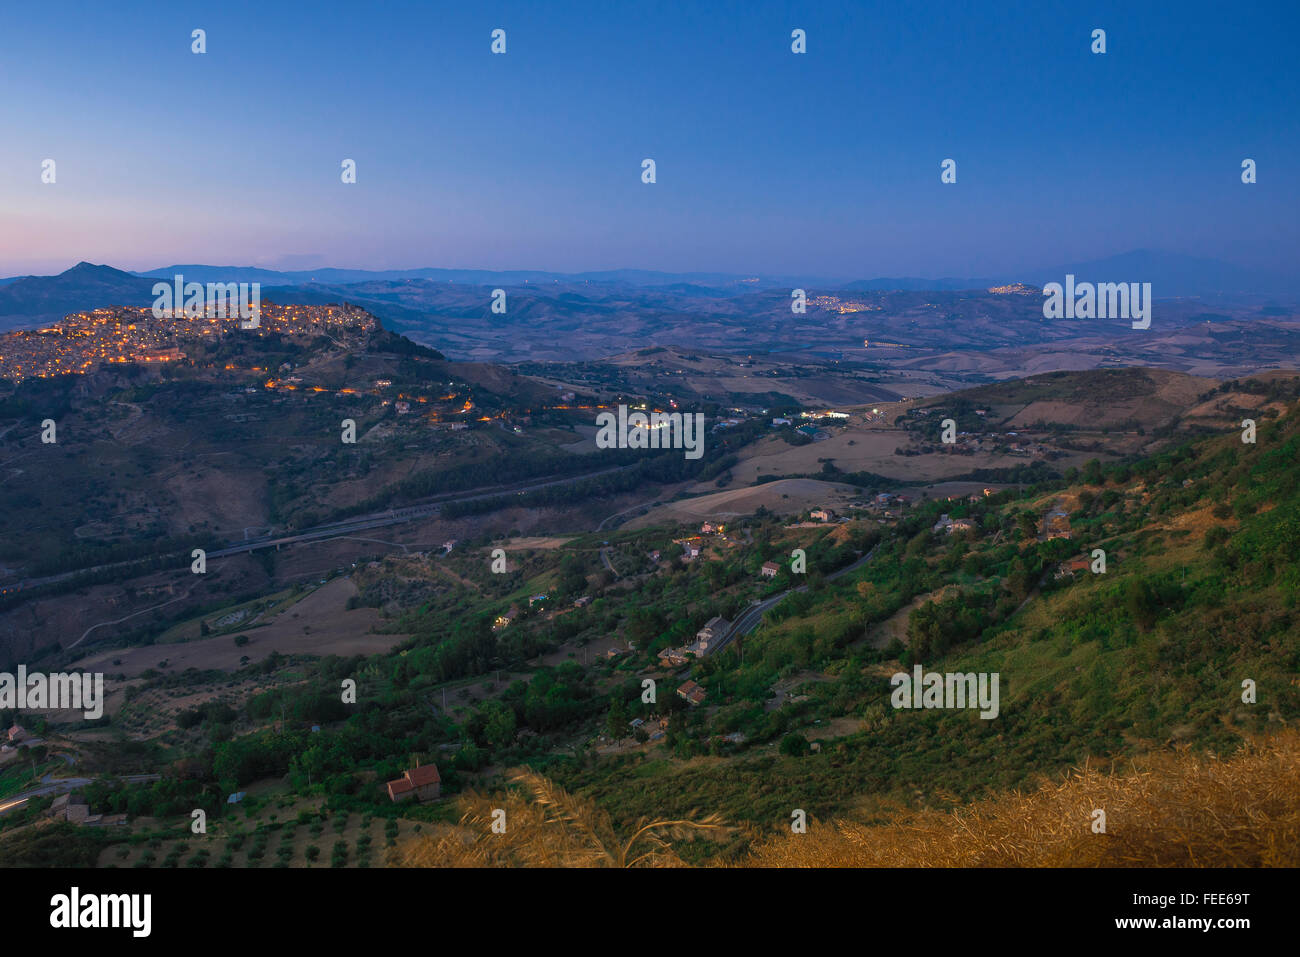 Sizilienlandschaft, Blick in der Dämmerung auf die Landschaft rund um die historische Stadt Calascibetta auf einem Hügel im Zentrum von Sizilien, Italien Stockfoto